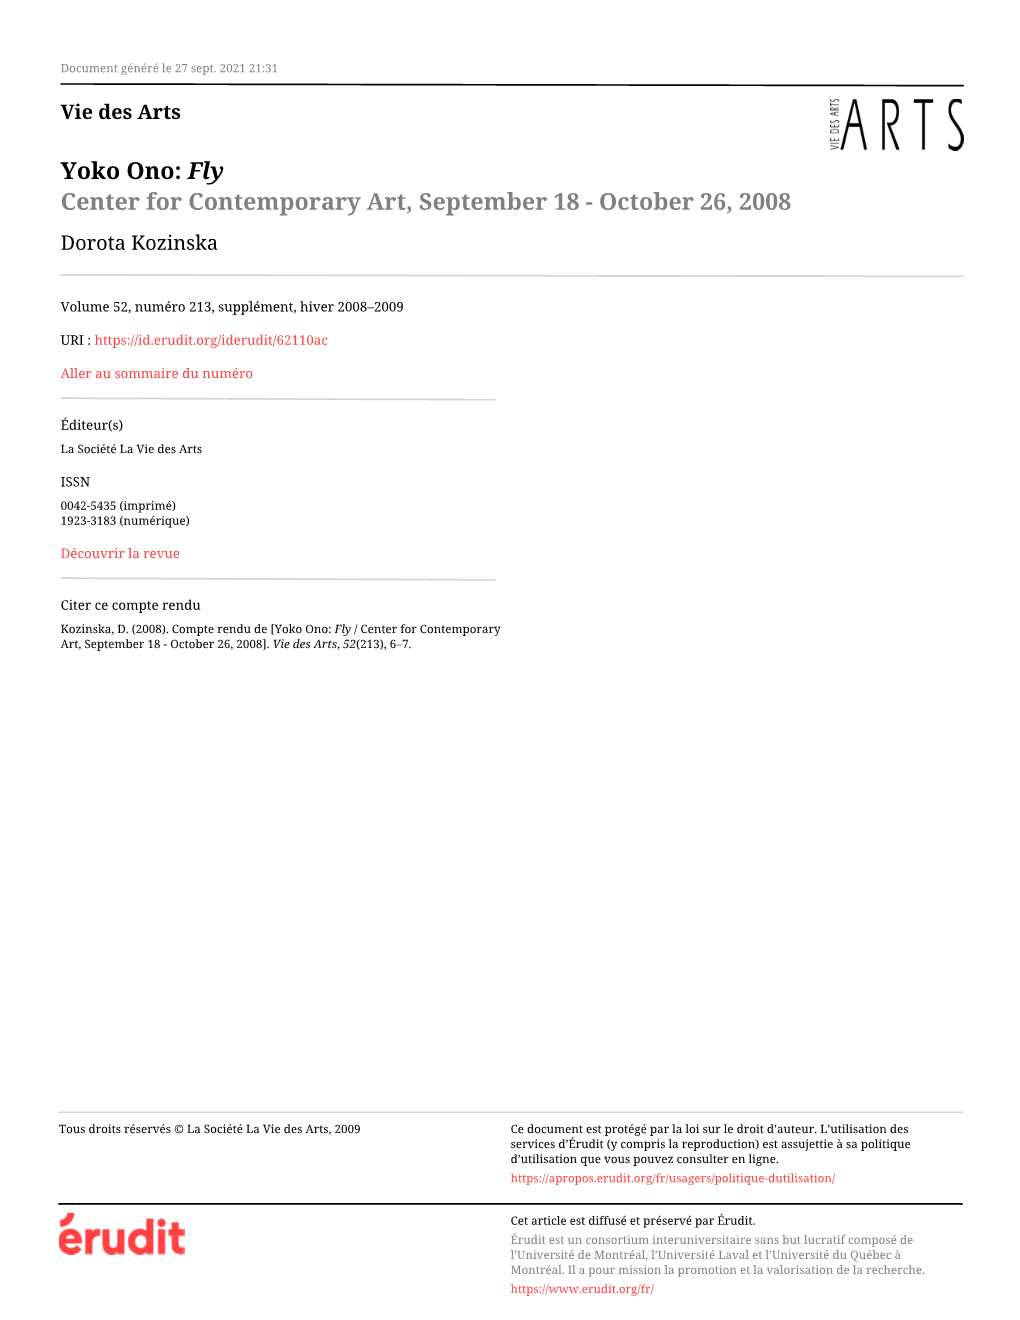 Yoko Ono: Fly / Center for Contemporary Art, September 18 - October 26, 2008]